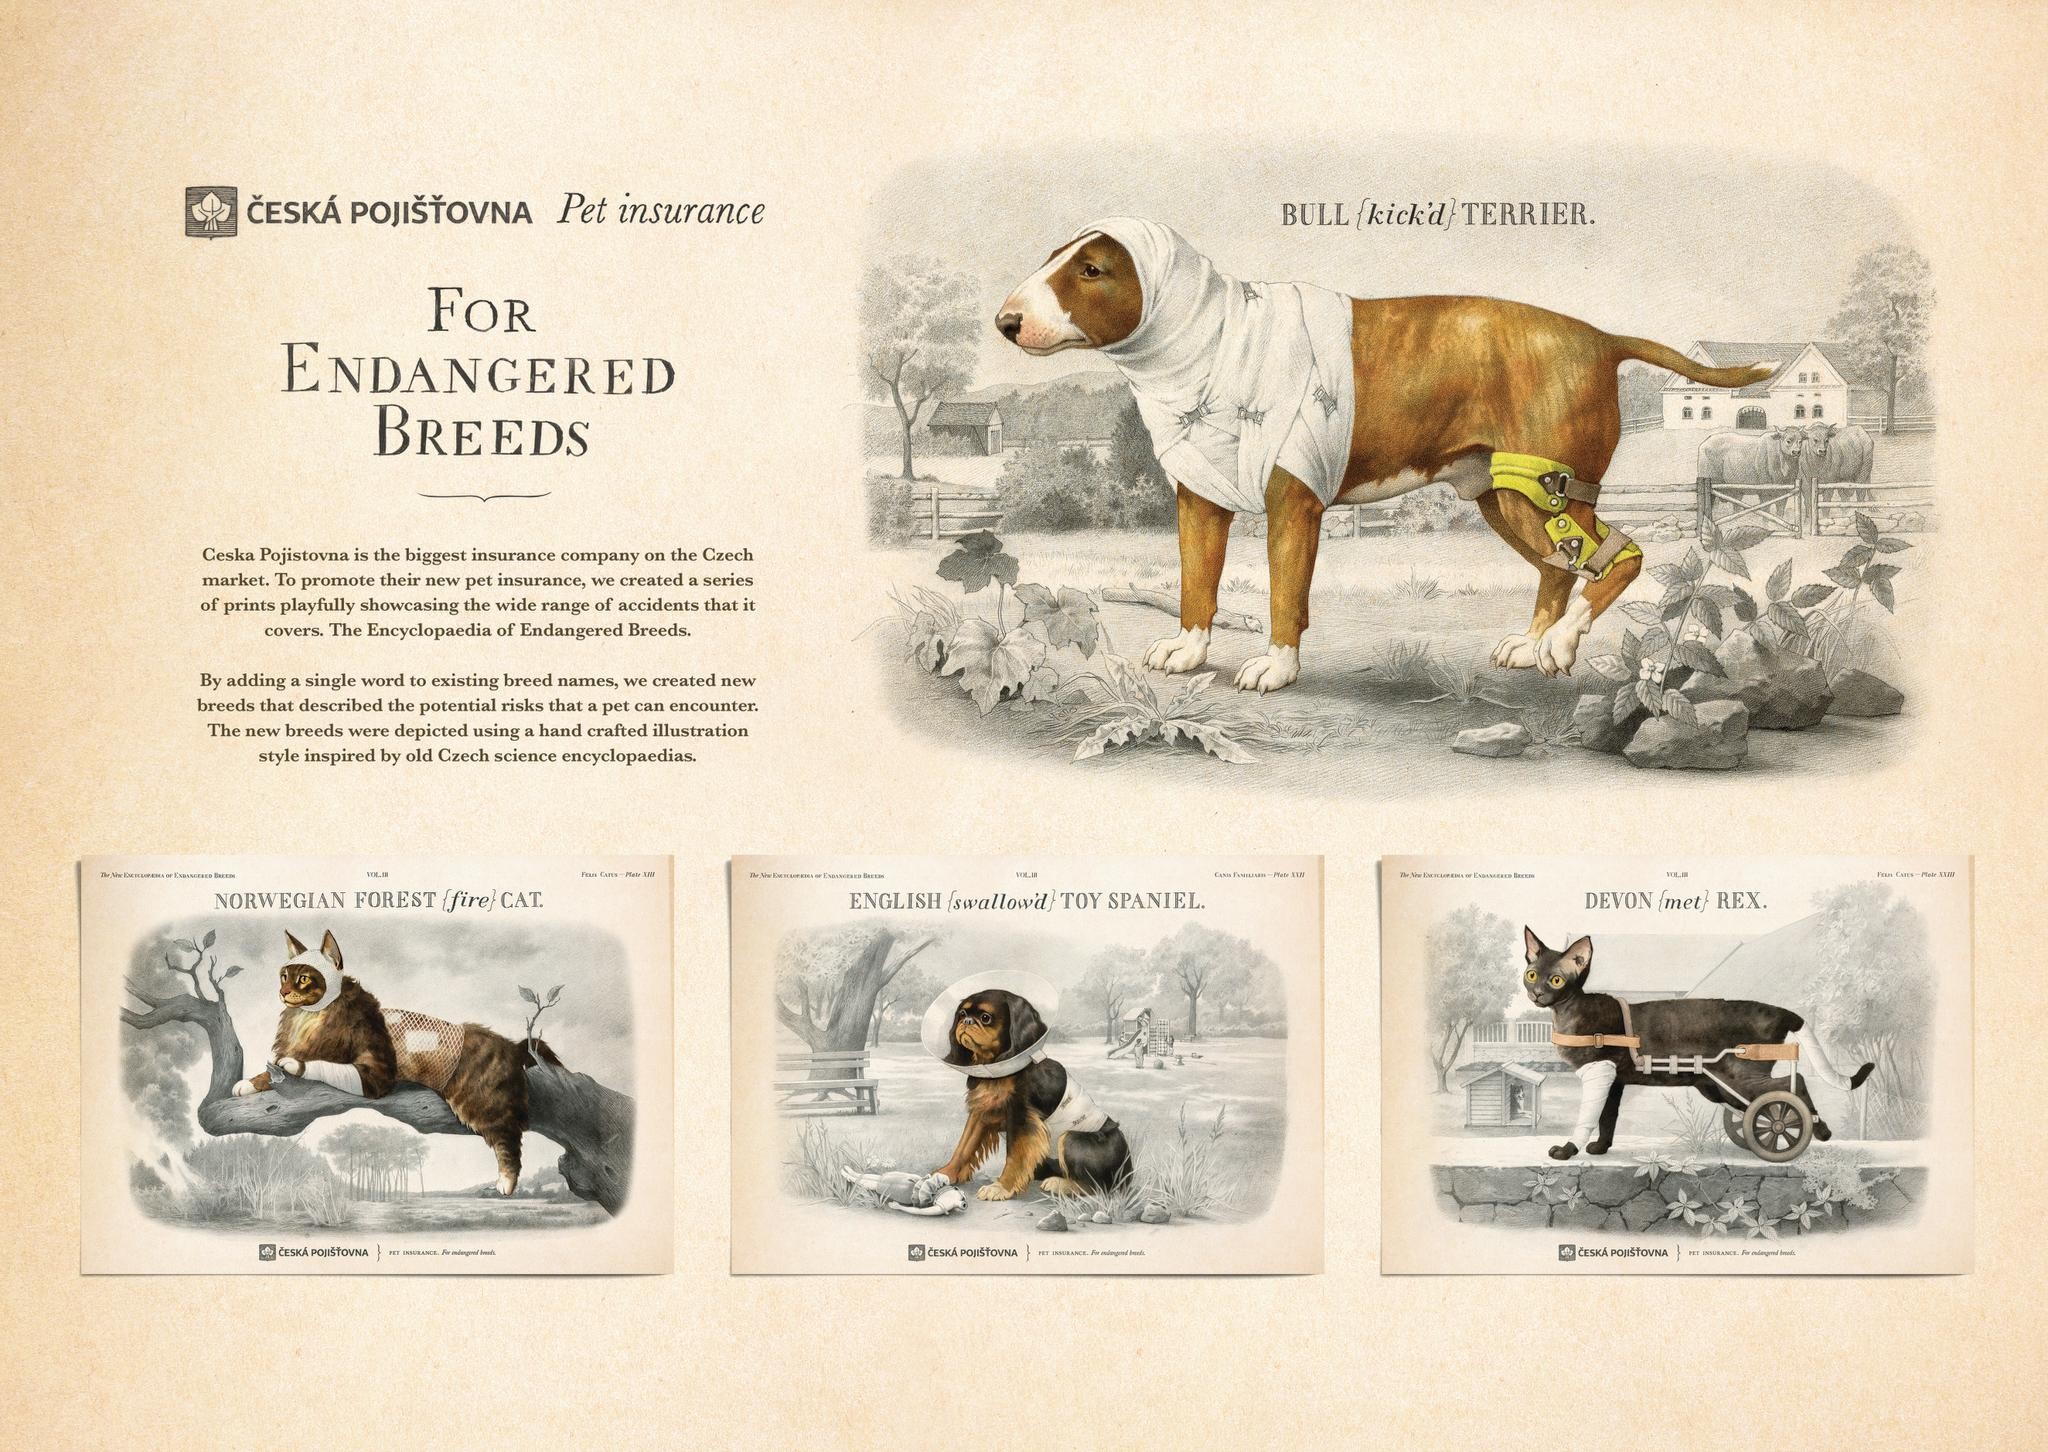 For Endangered Breeds - Bull Terrier